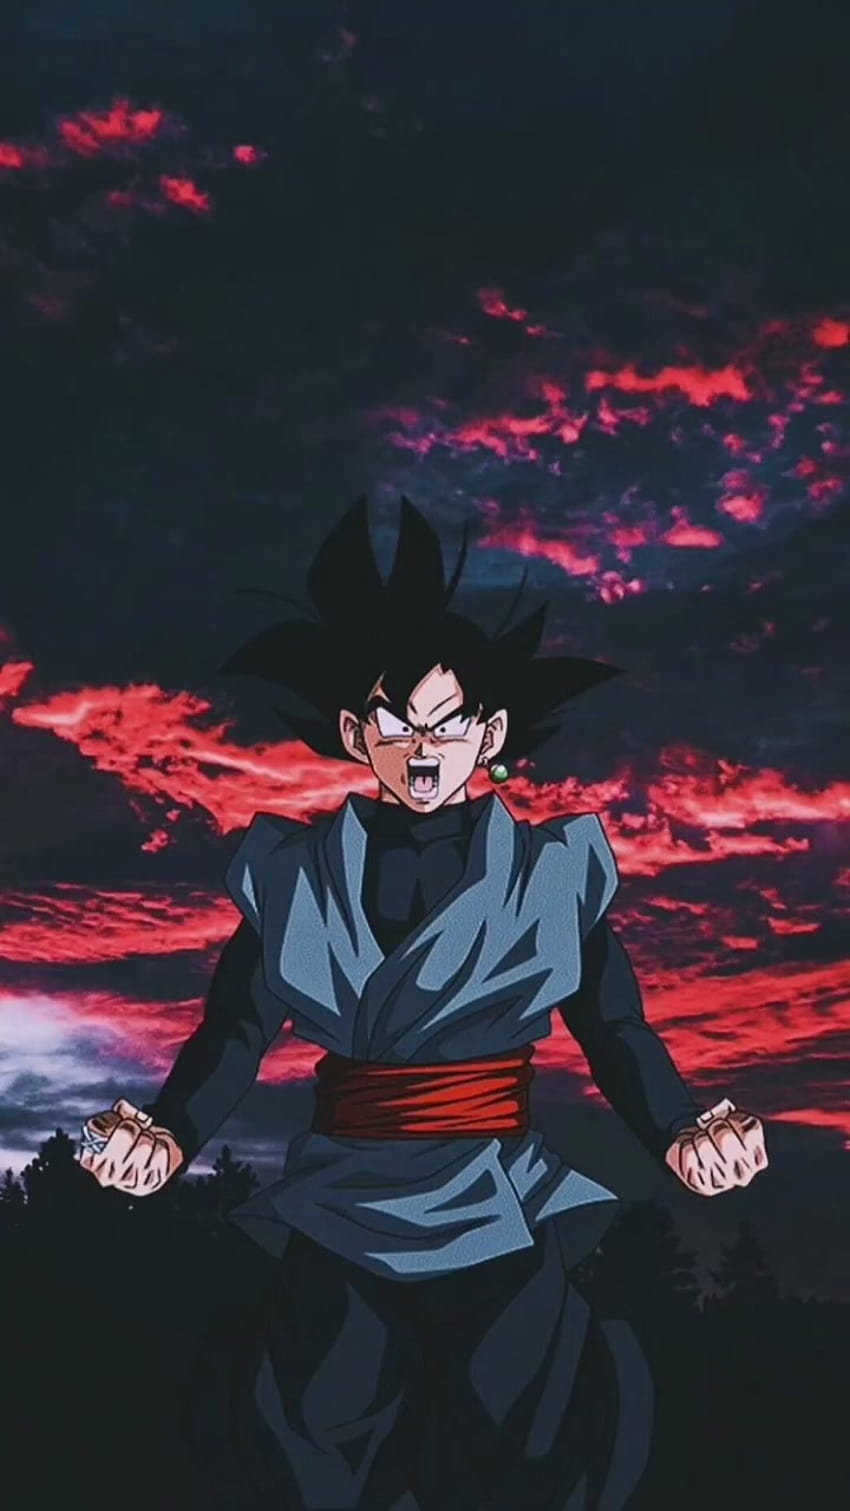 Hình nền Black Goku là một trong những lựa chọn phổ biến của các fan của loạt truyện Dragon Ball. Với những cảnh quay điển hình, nhân vật Black Goku luôn thu hút sự chú ý và yêu thích. Chọn ngay một bức hình nền Black Goku chất lượng tốt để thấy rõ vẻ đẹp của nhân vật này.